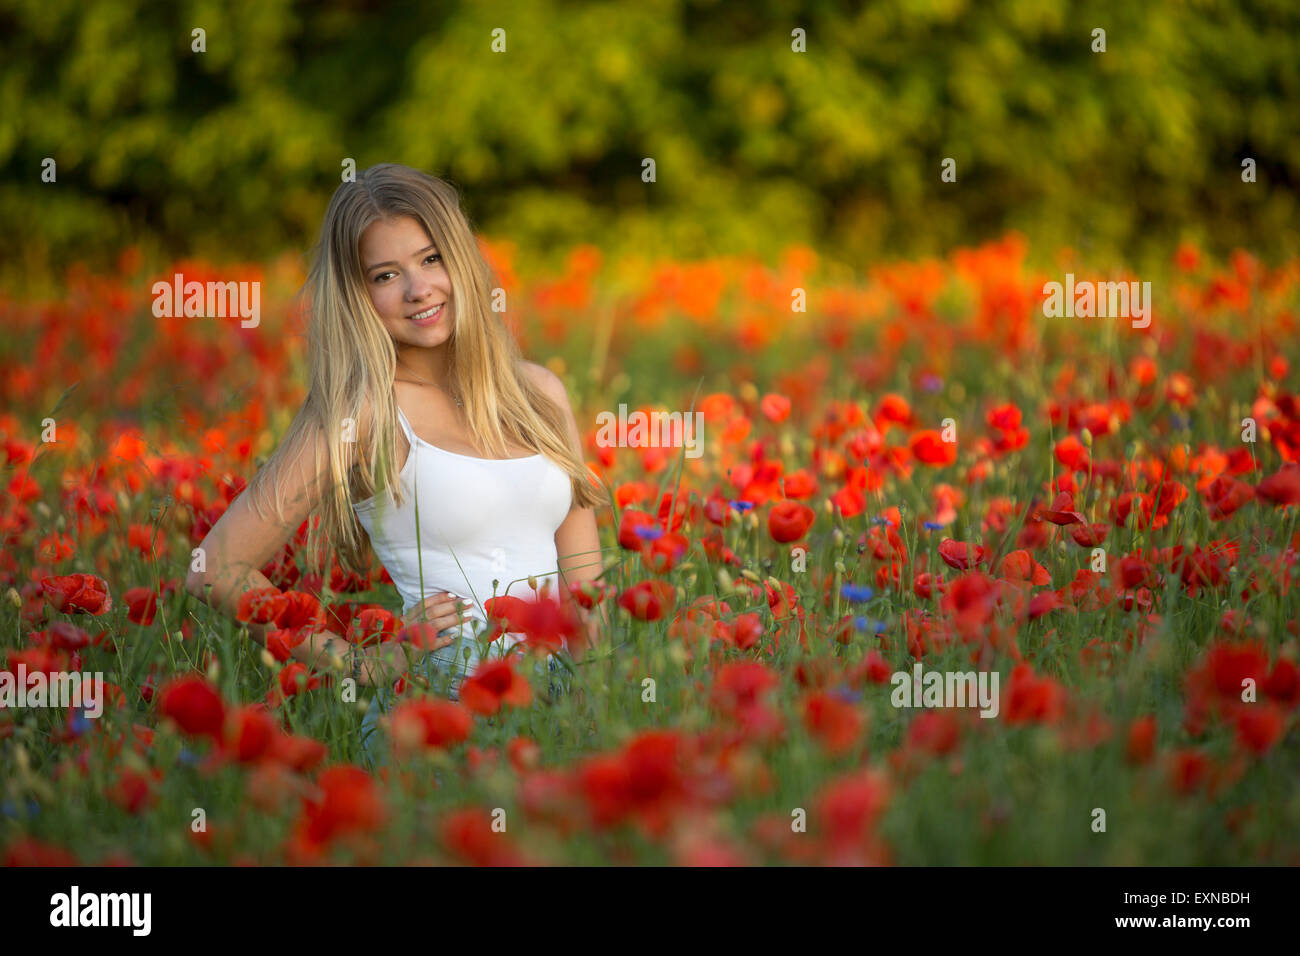 In Germania, in Baviera, il ritratto della ragazza in un campo di semi di papavero Foto Stock